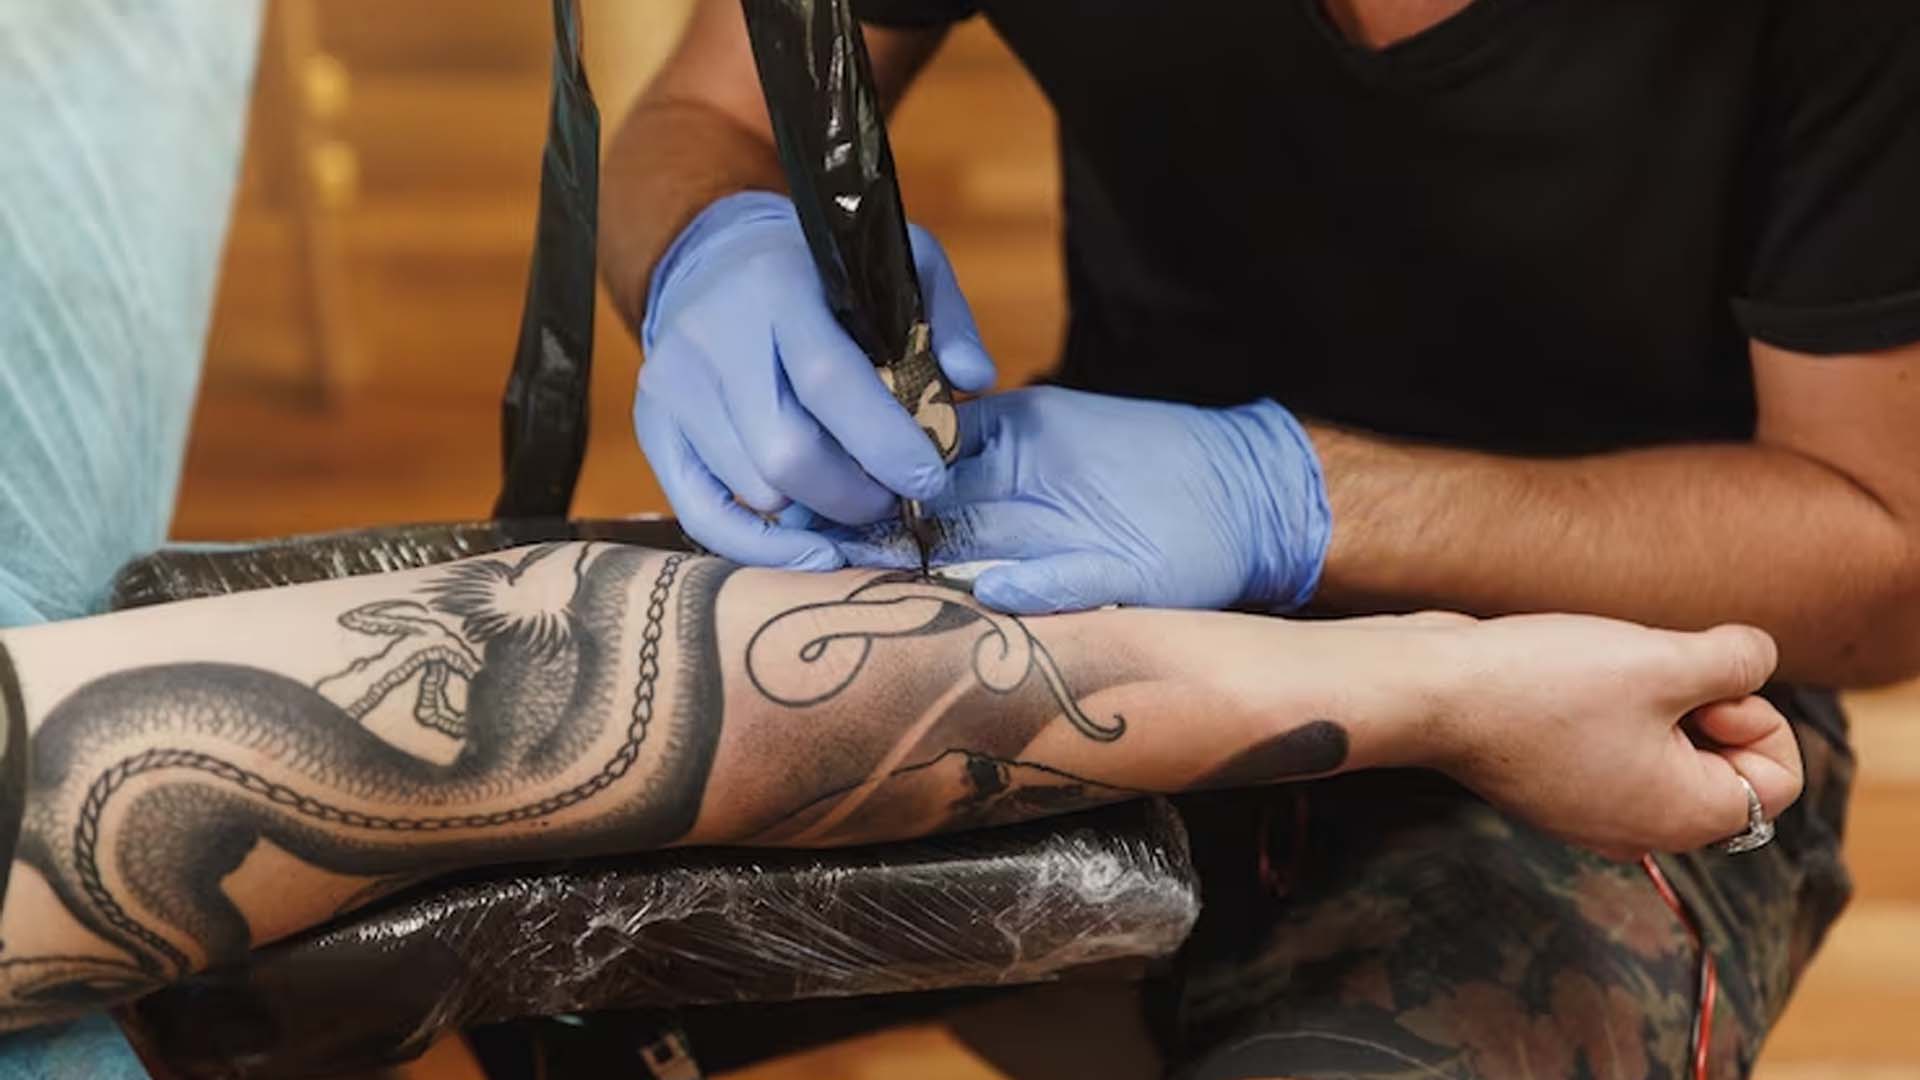 Tattoo artist doing Tattoo on hand